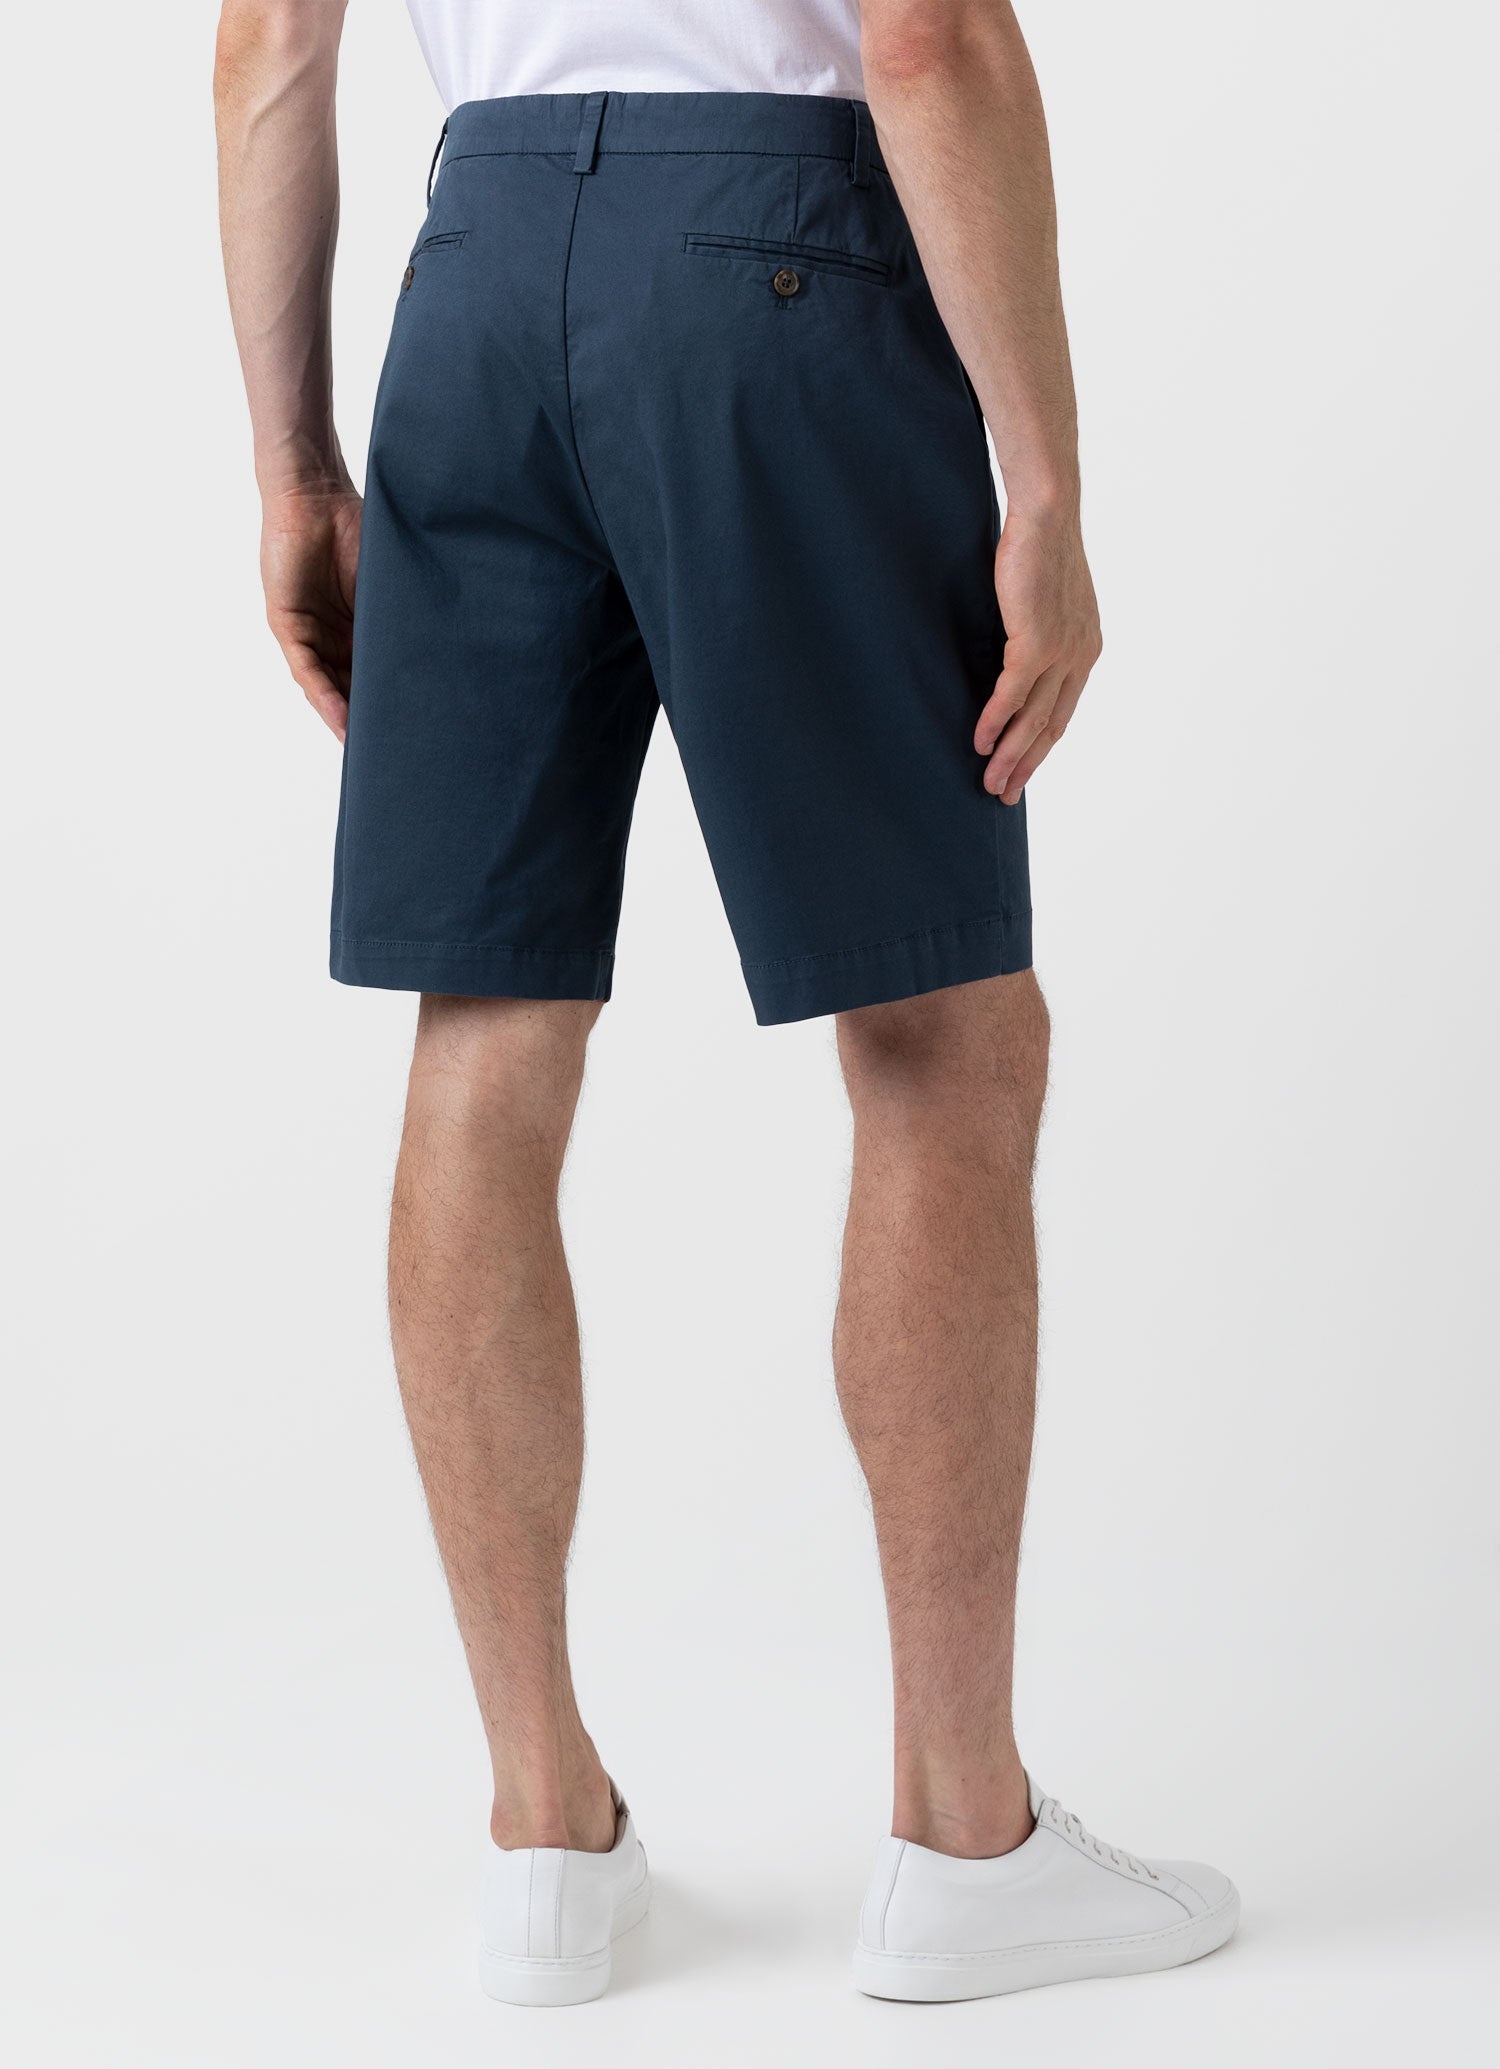 Classic Chino Shorts - 4